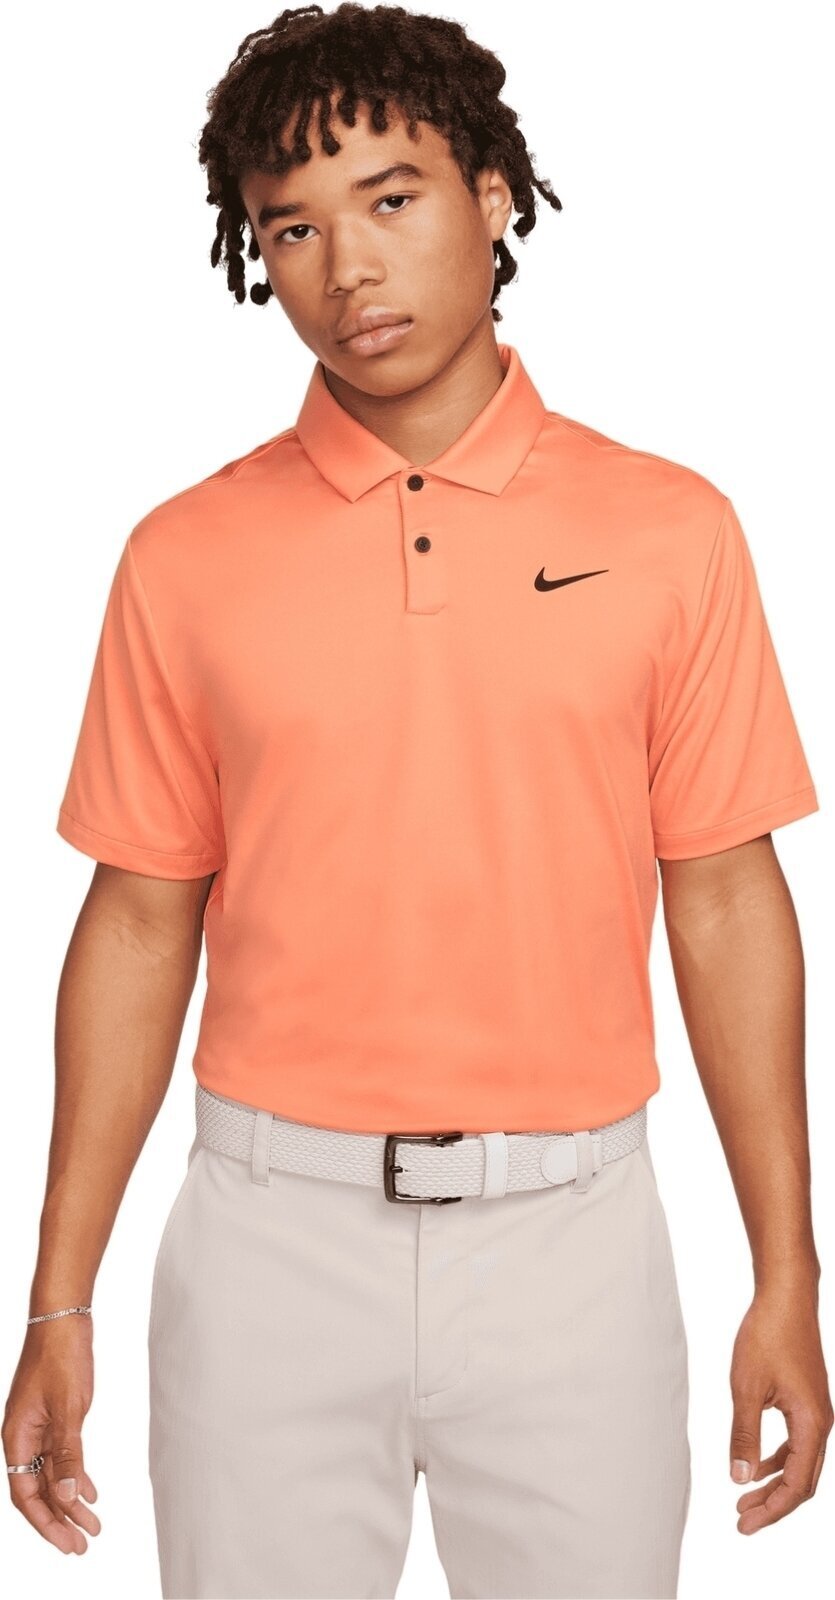 Camiseta polo Nike Dri-Fit Tour Solid Mens Polo Orange Trance/Black S Camiseta polo